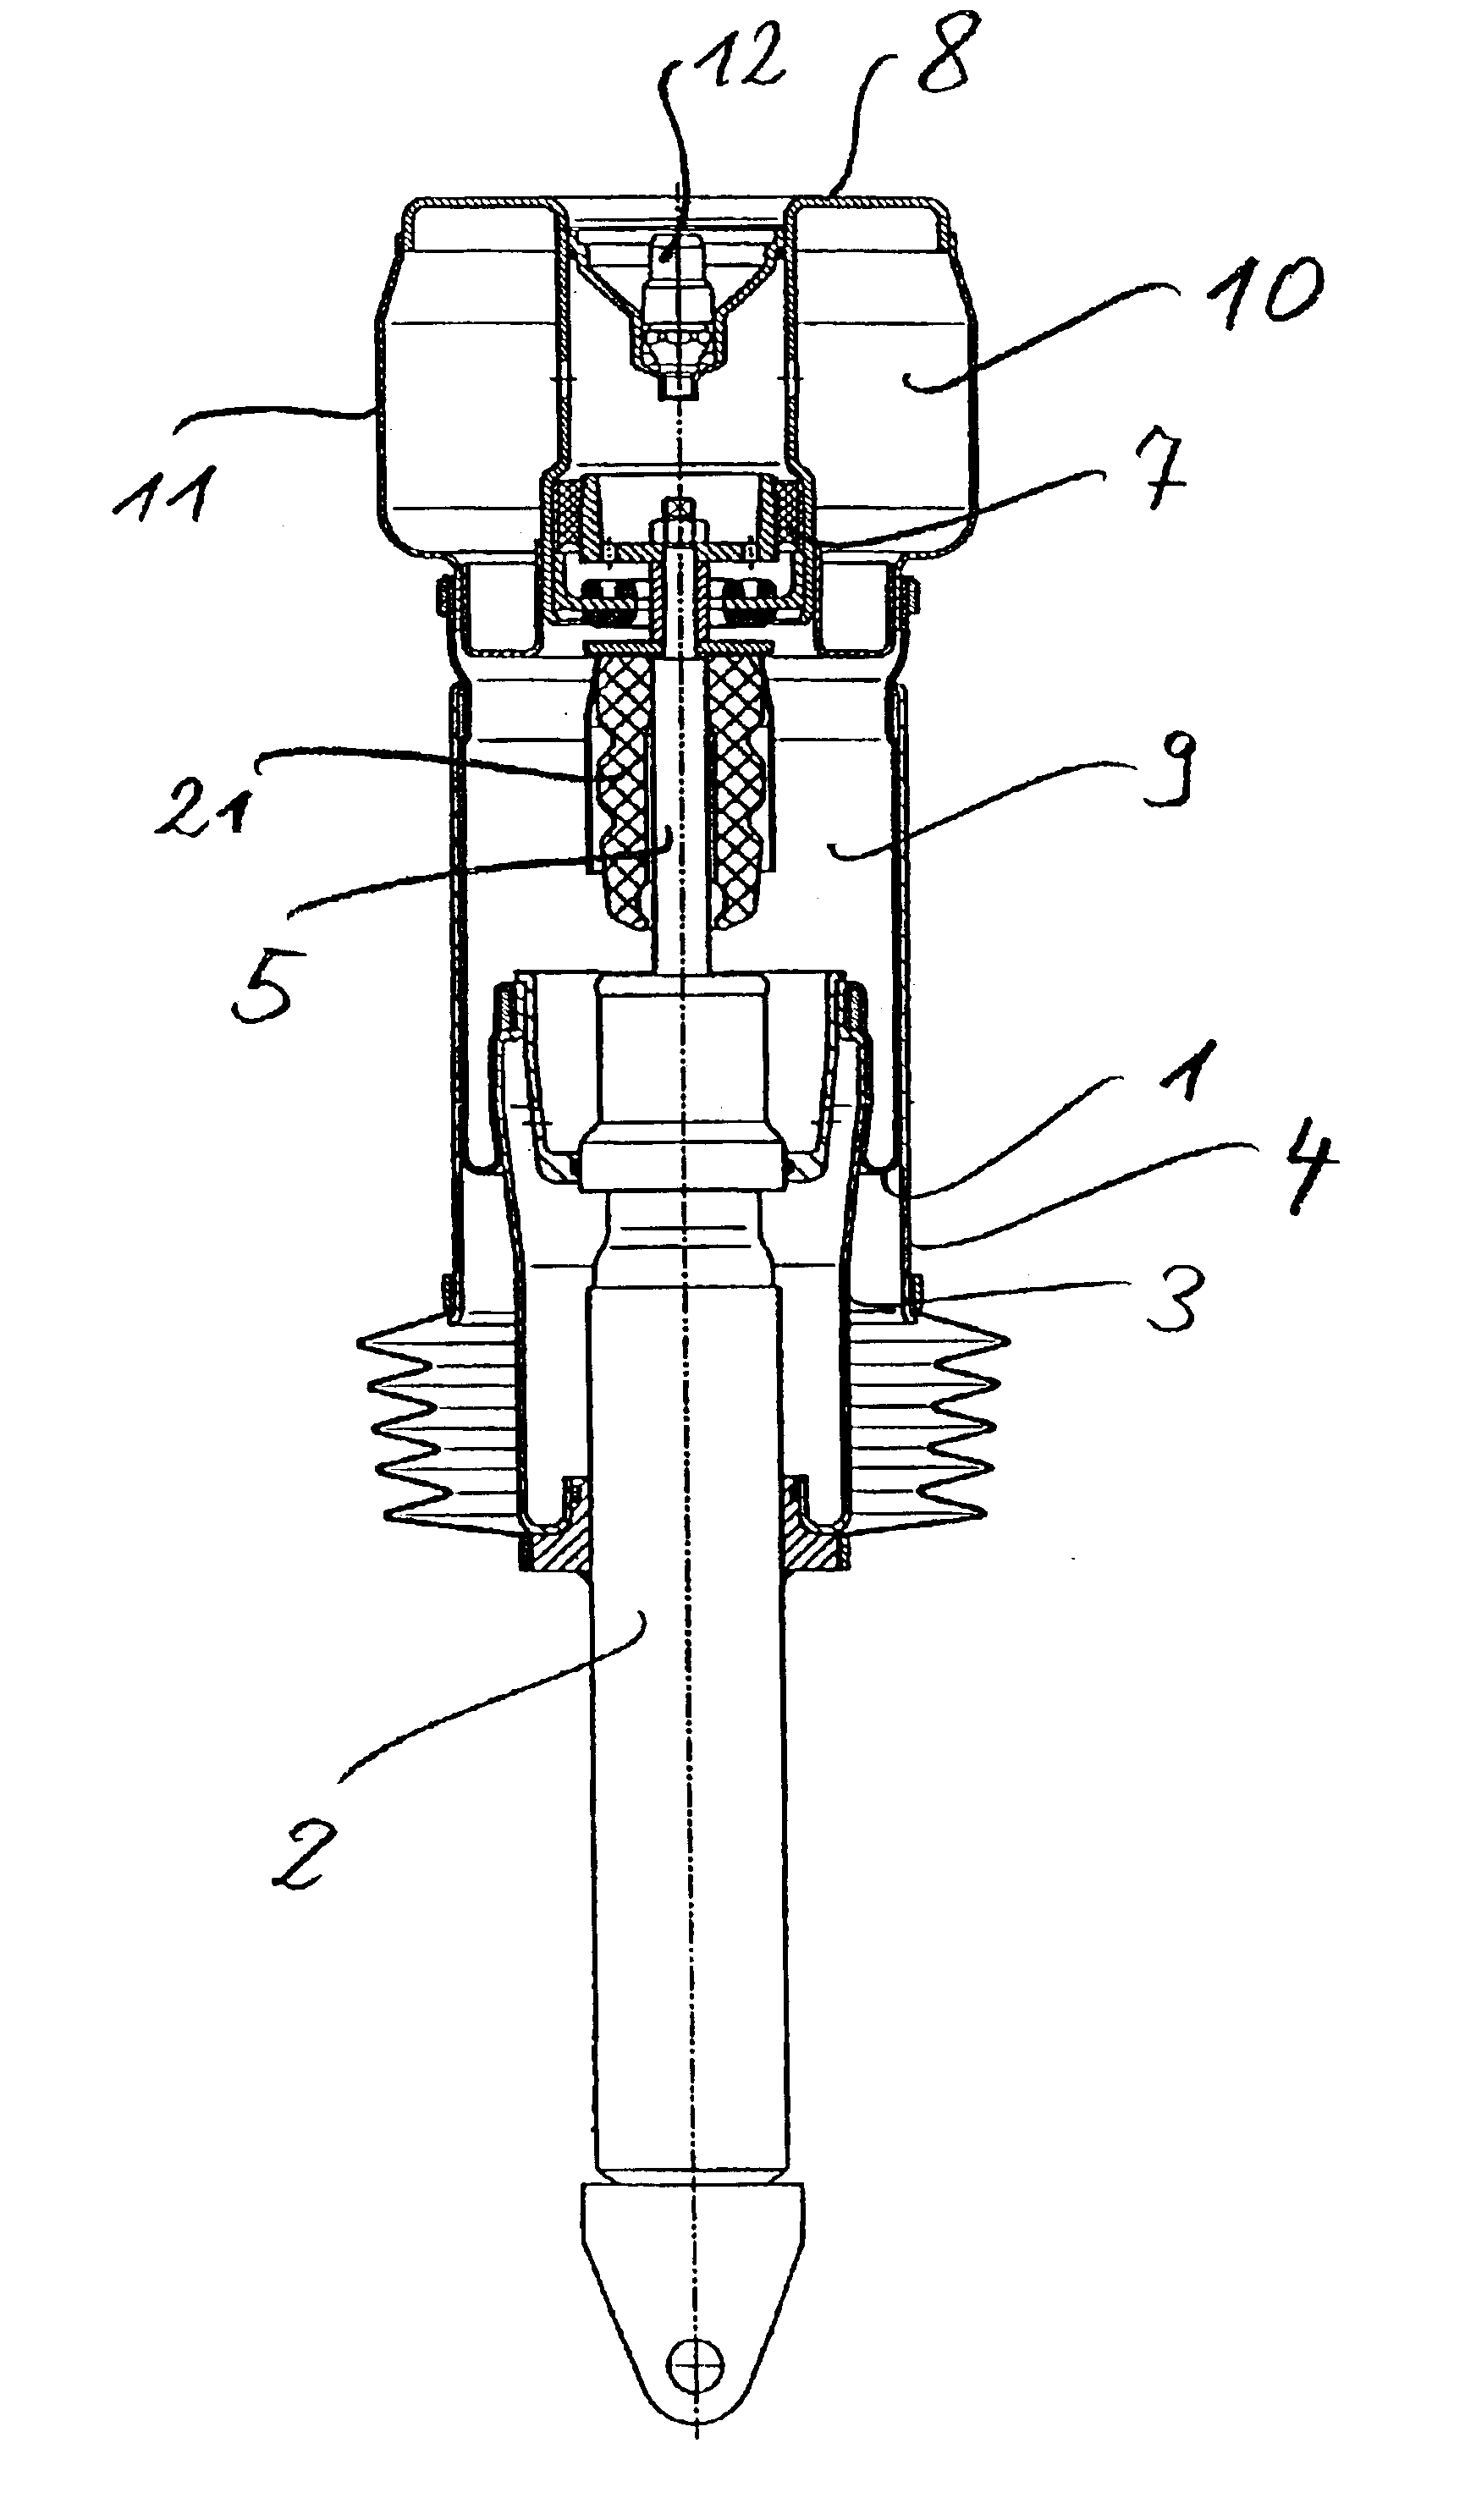 Pneumatic-spring wheel-suspension leg